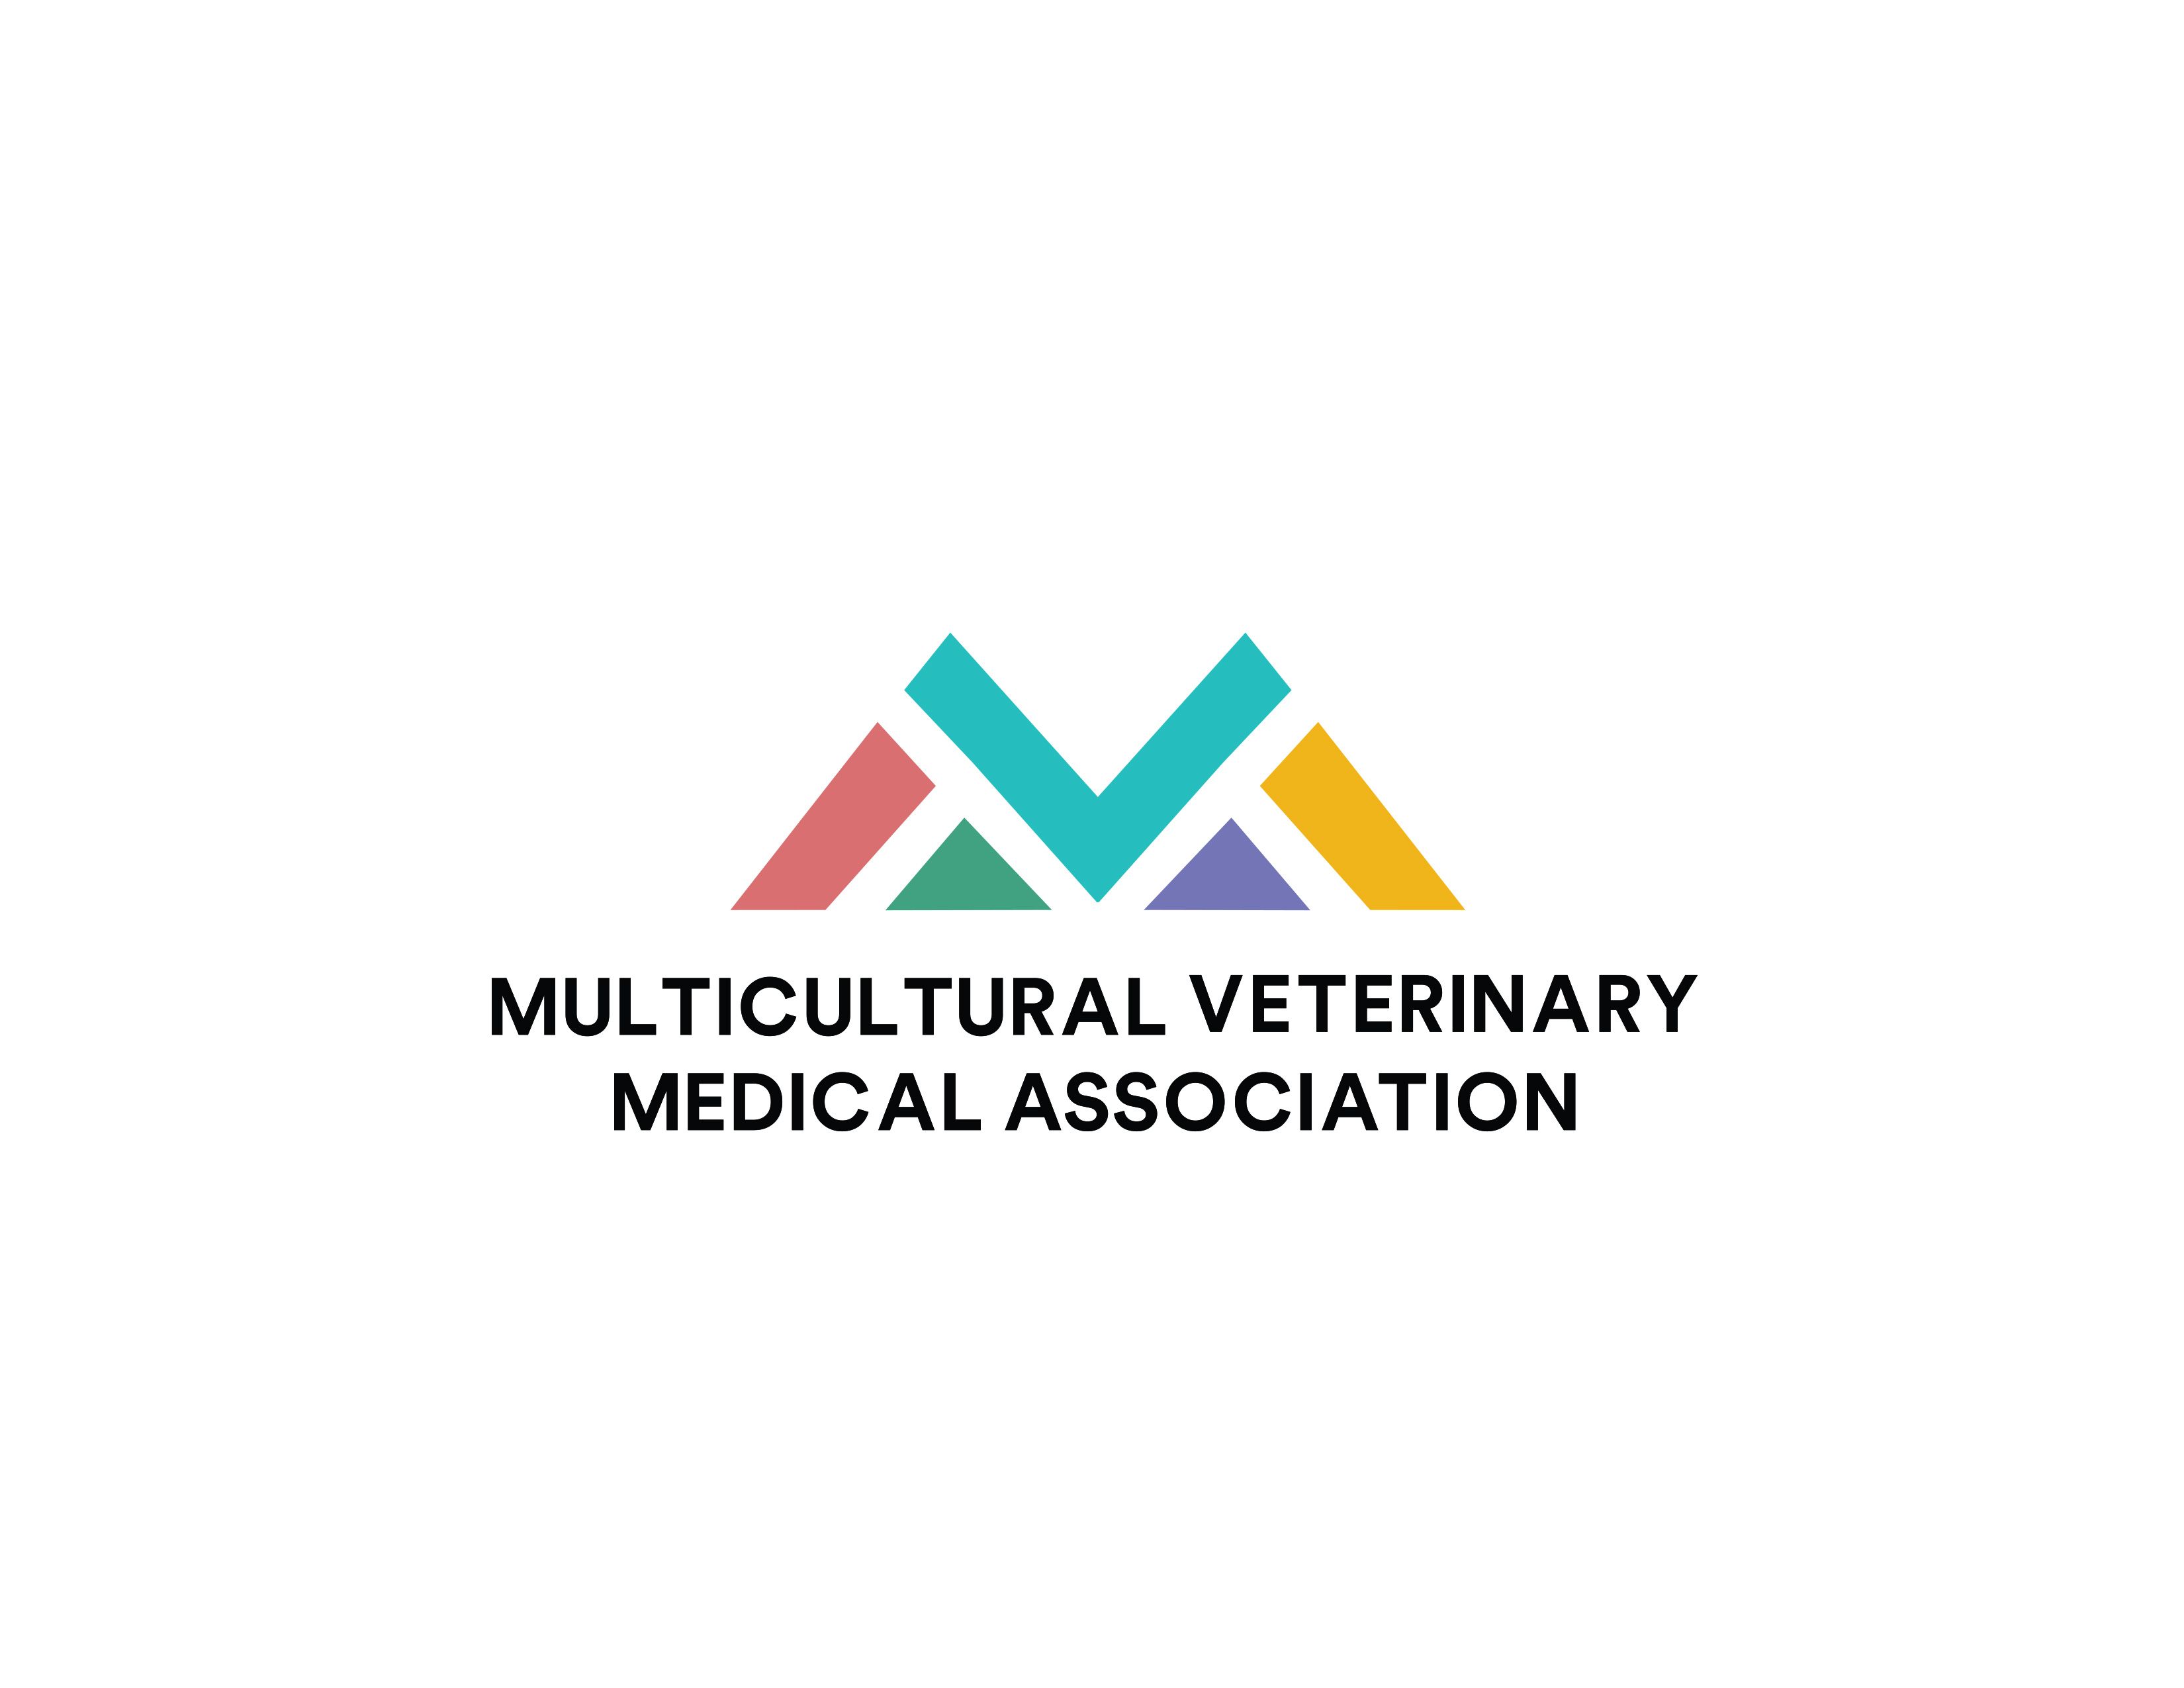 Multicultural Veterinary Medical Association